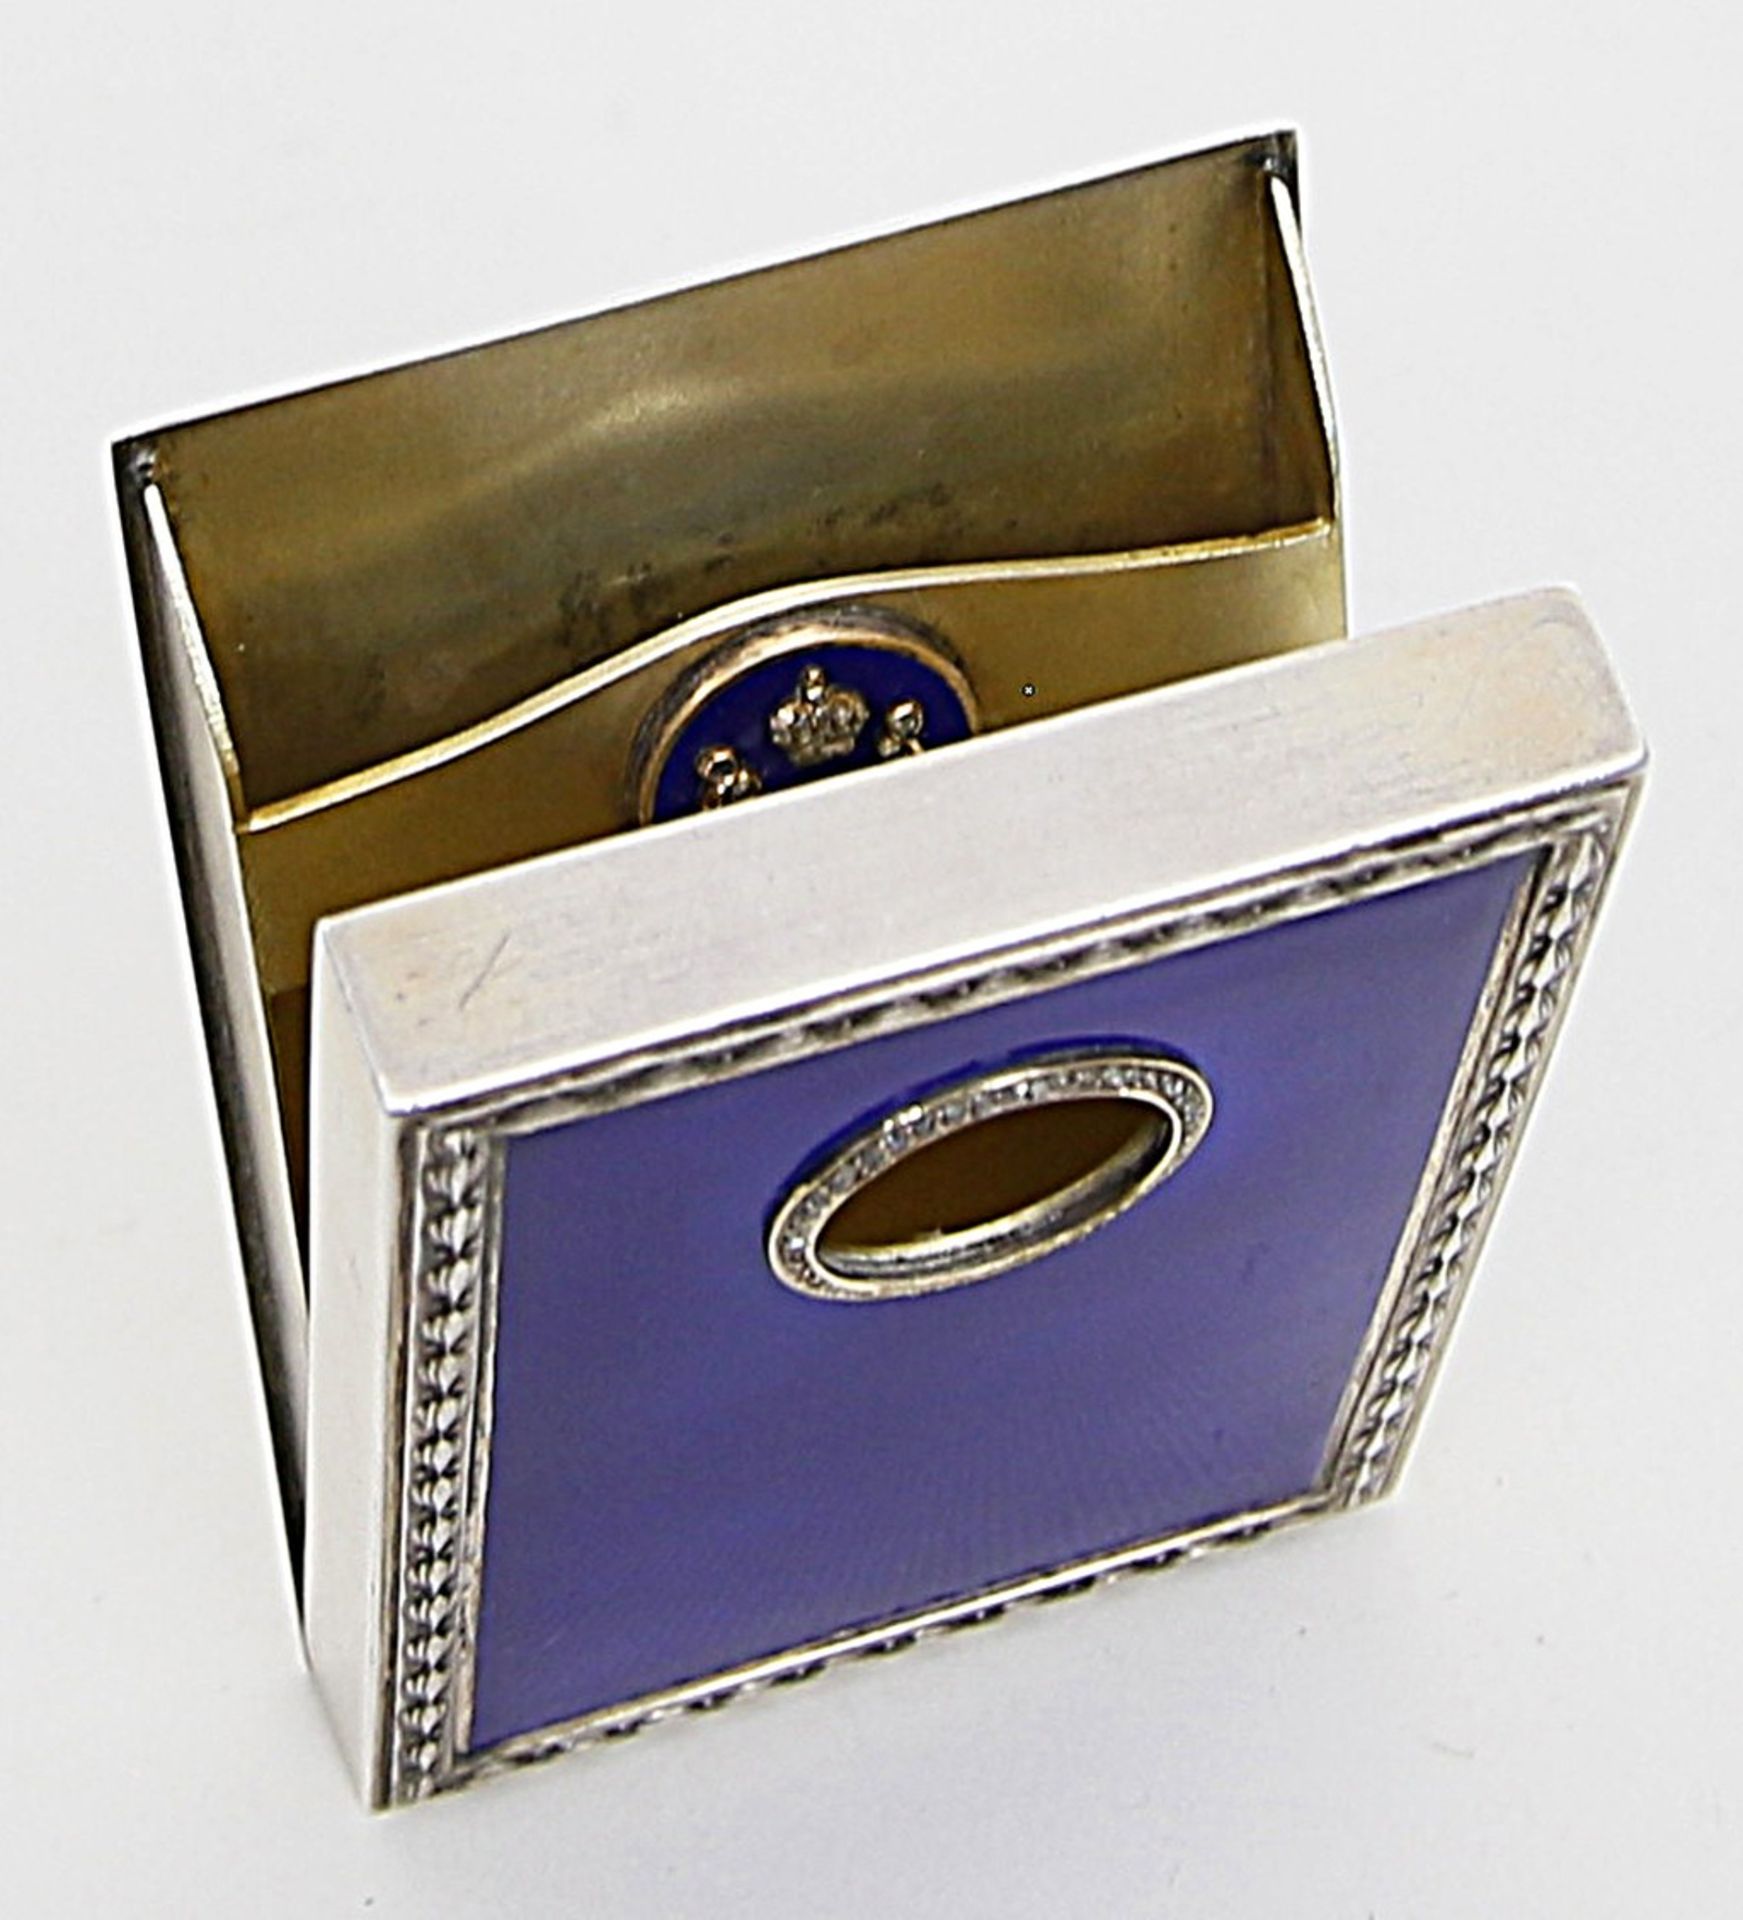 Kaiserliches Etui.800/000 Silber, brutto 141 g, Innenvergoldung. Rechteckform mit umlaufendem - Bild 2 aus 5